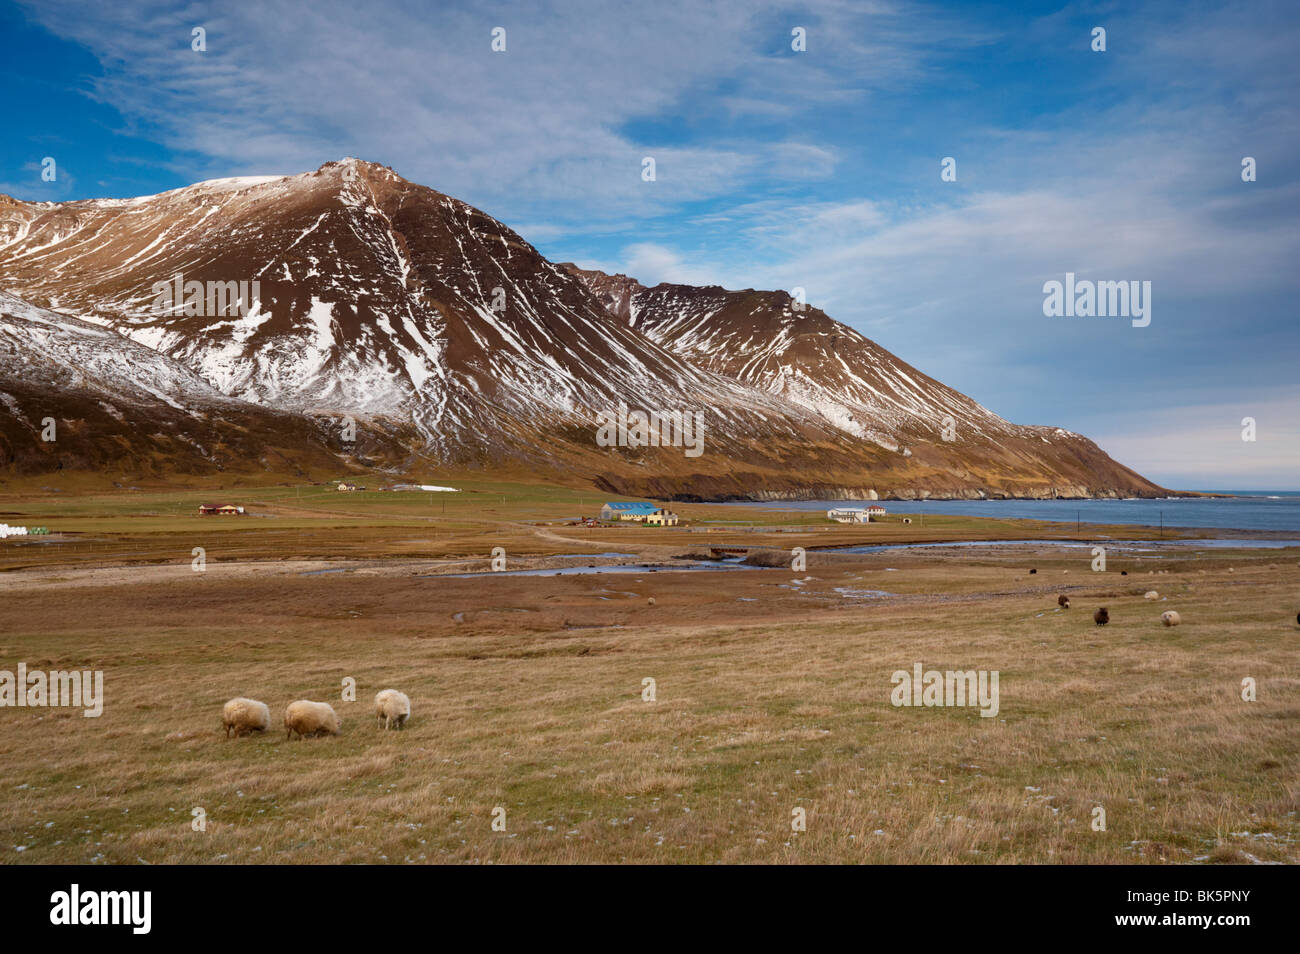 Las granjas y las ovejas en el valle de Njardvik Borgarfjordur Eystri fiordo en la distancia, este área de fiordos, Islandia, las regiones polares Foto de stock